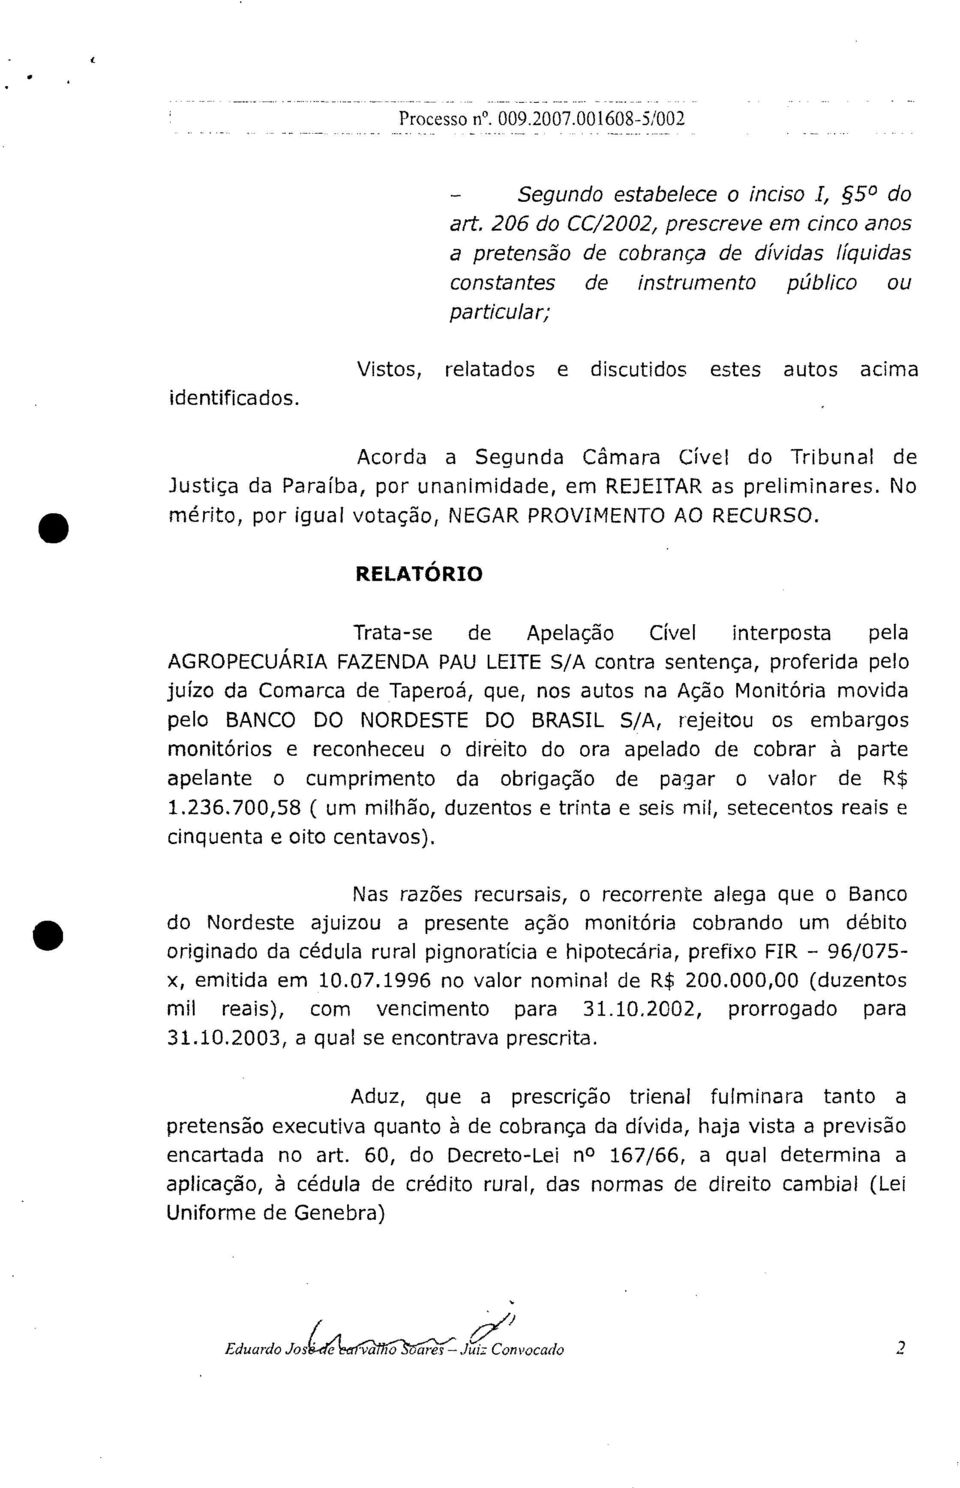 Vistos, relatados e discutidos estes autos acima Acorda a Segunda Câmara Cível do Tribunal de Justiça da Paraíba, por unanimidade, em REJEITAR as preliminares.